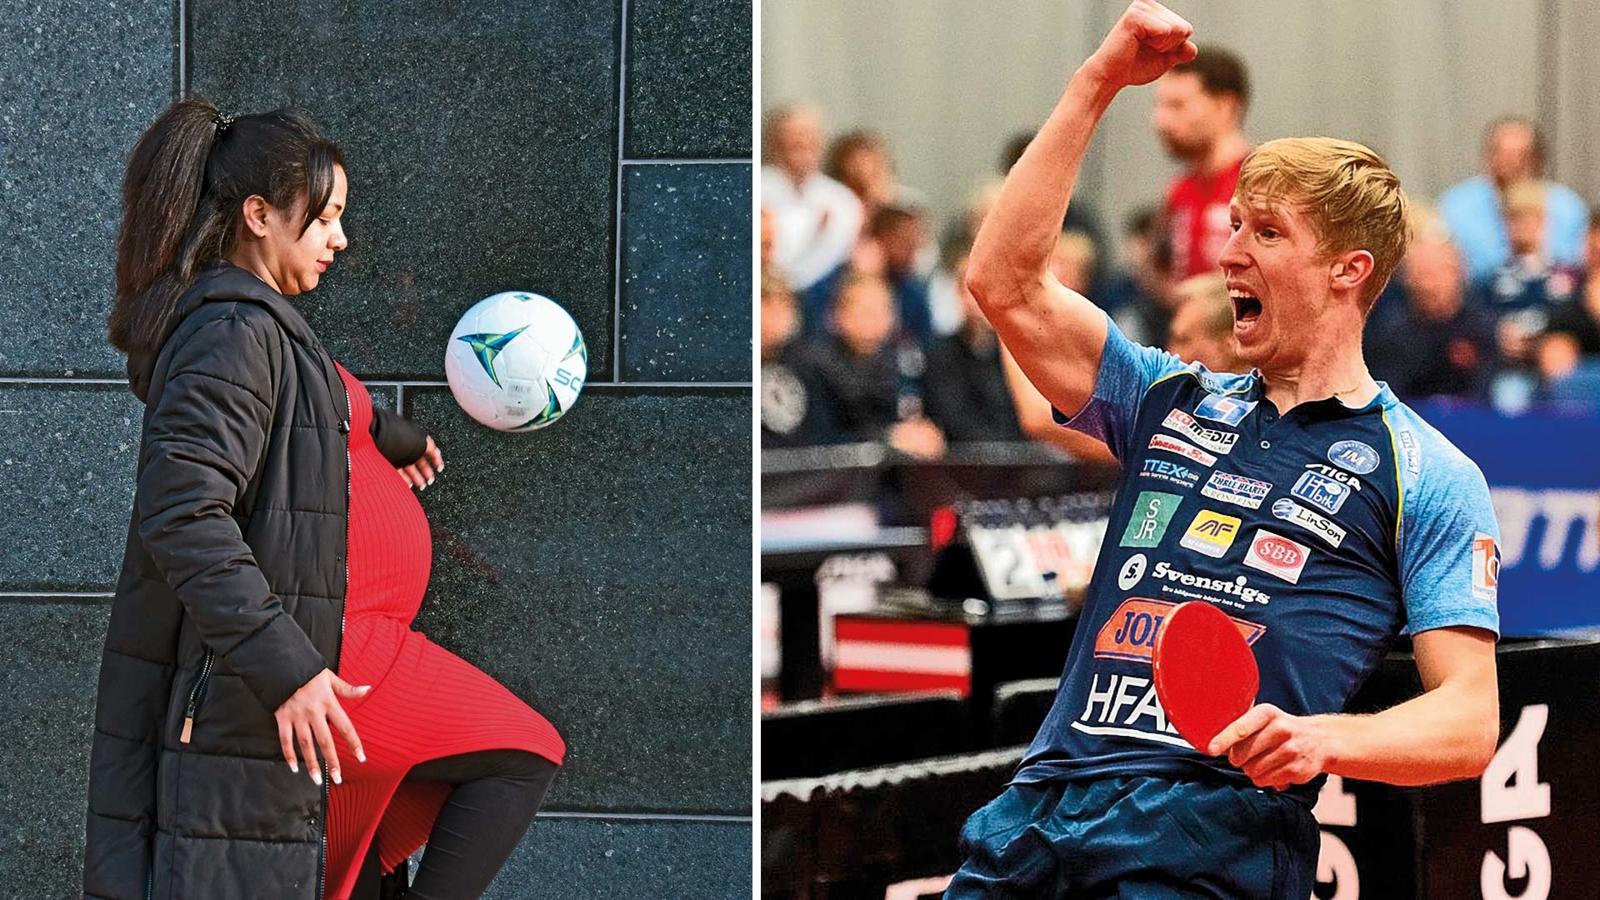 Yohana Teklay kickar med en fotboll. Simon Arvidsson har ett bordtennisracket i ena handen och höjer andra armen i en segergest.